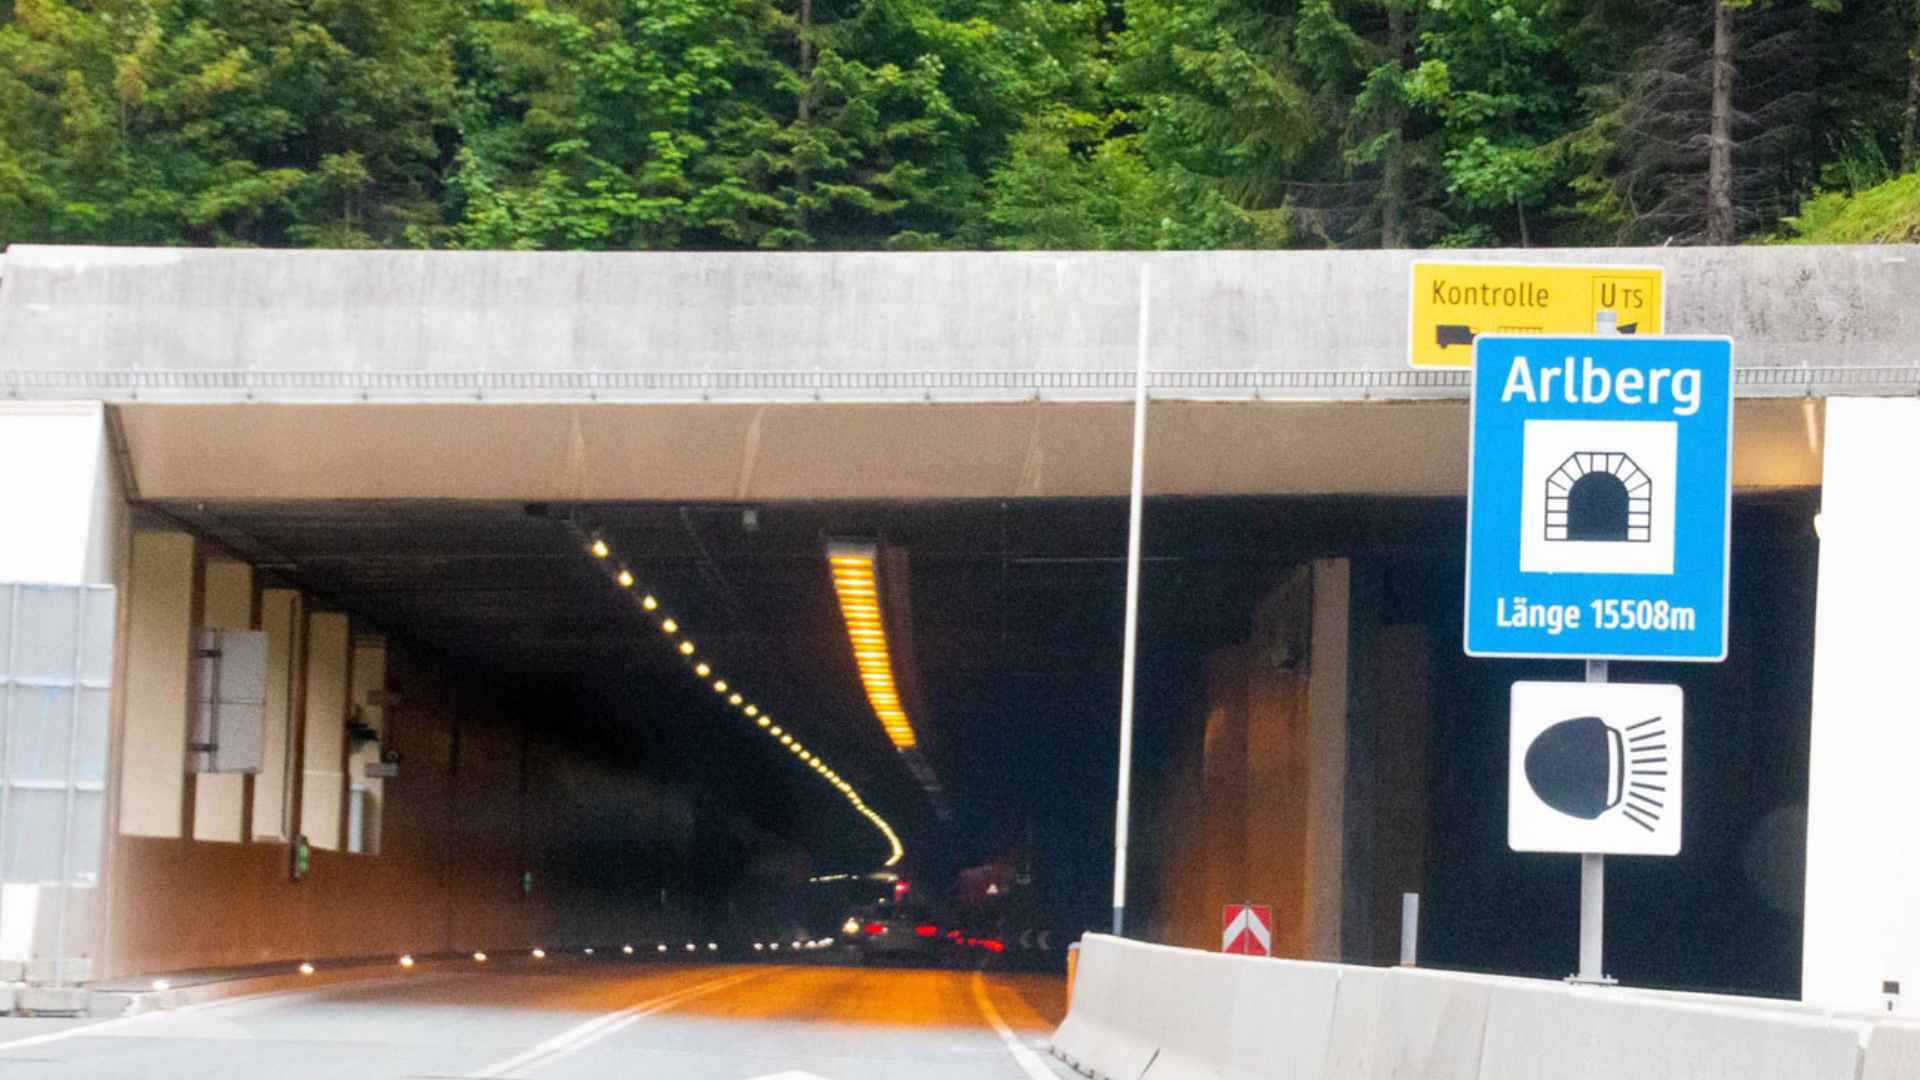 Trasporti Internazionali Austria Tirolo Chiusura del tunnel dellArlberg per lavori di manutenzione